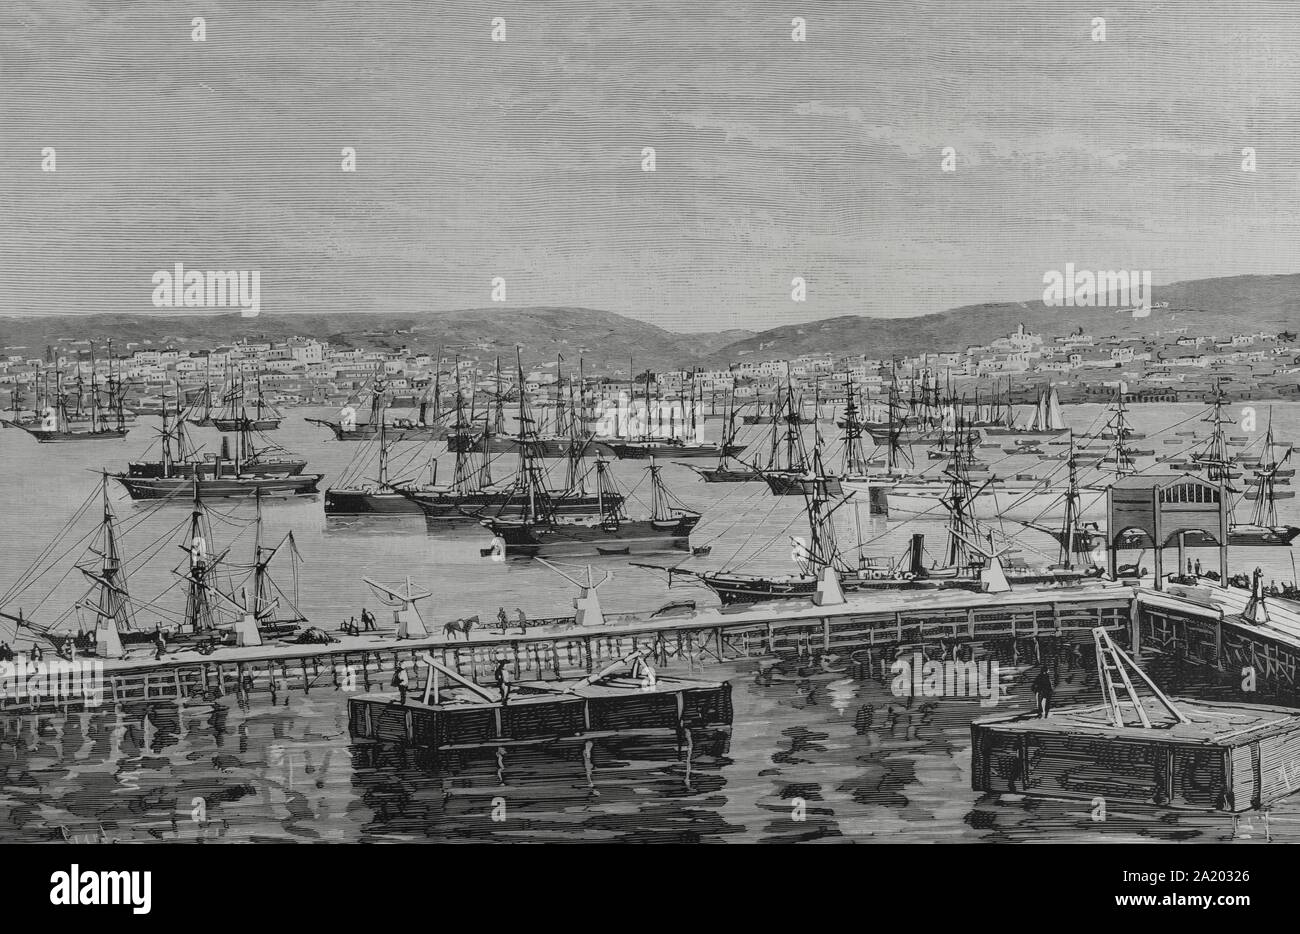 Chile. Valparaiso. Vista panorámica del puerto y la ciudad, desde el muelle de descarga. Grabado por Capuz. La Ilustración Española y Americana, 15 de marzo de 1884. Stock Photo